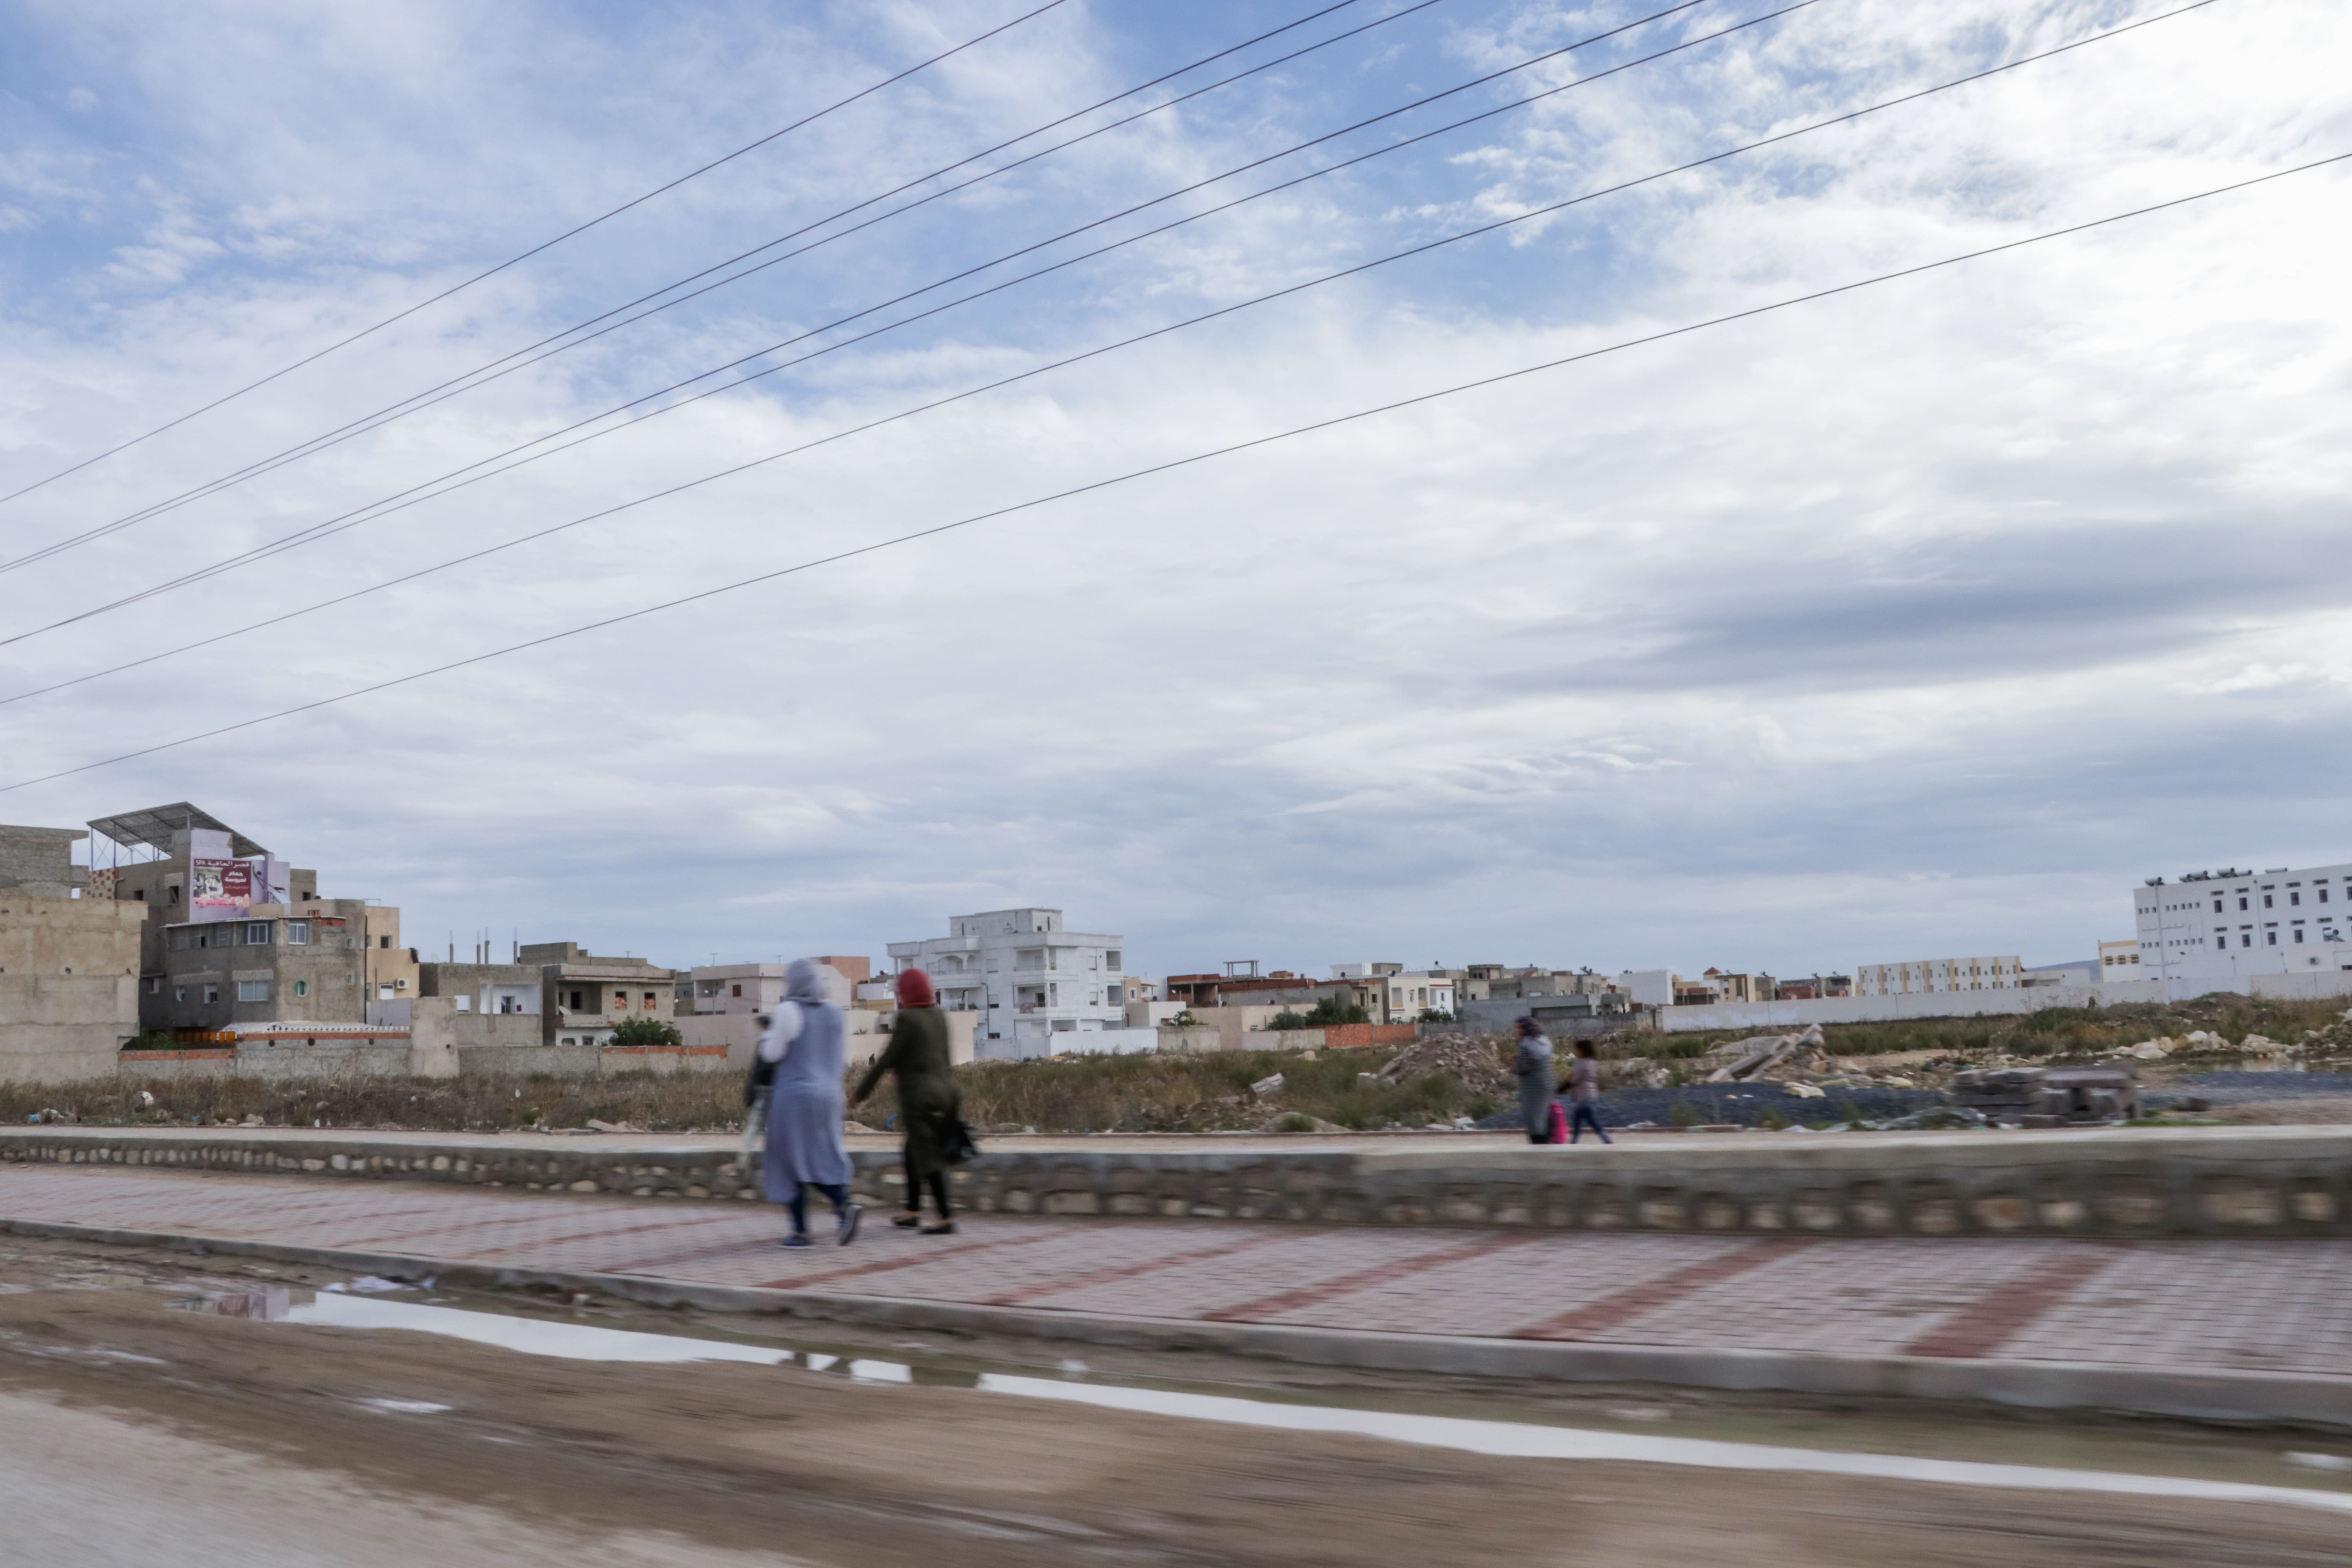 Women walking along a street in the MENA region.